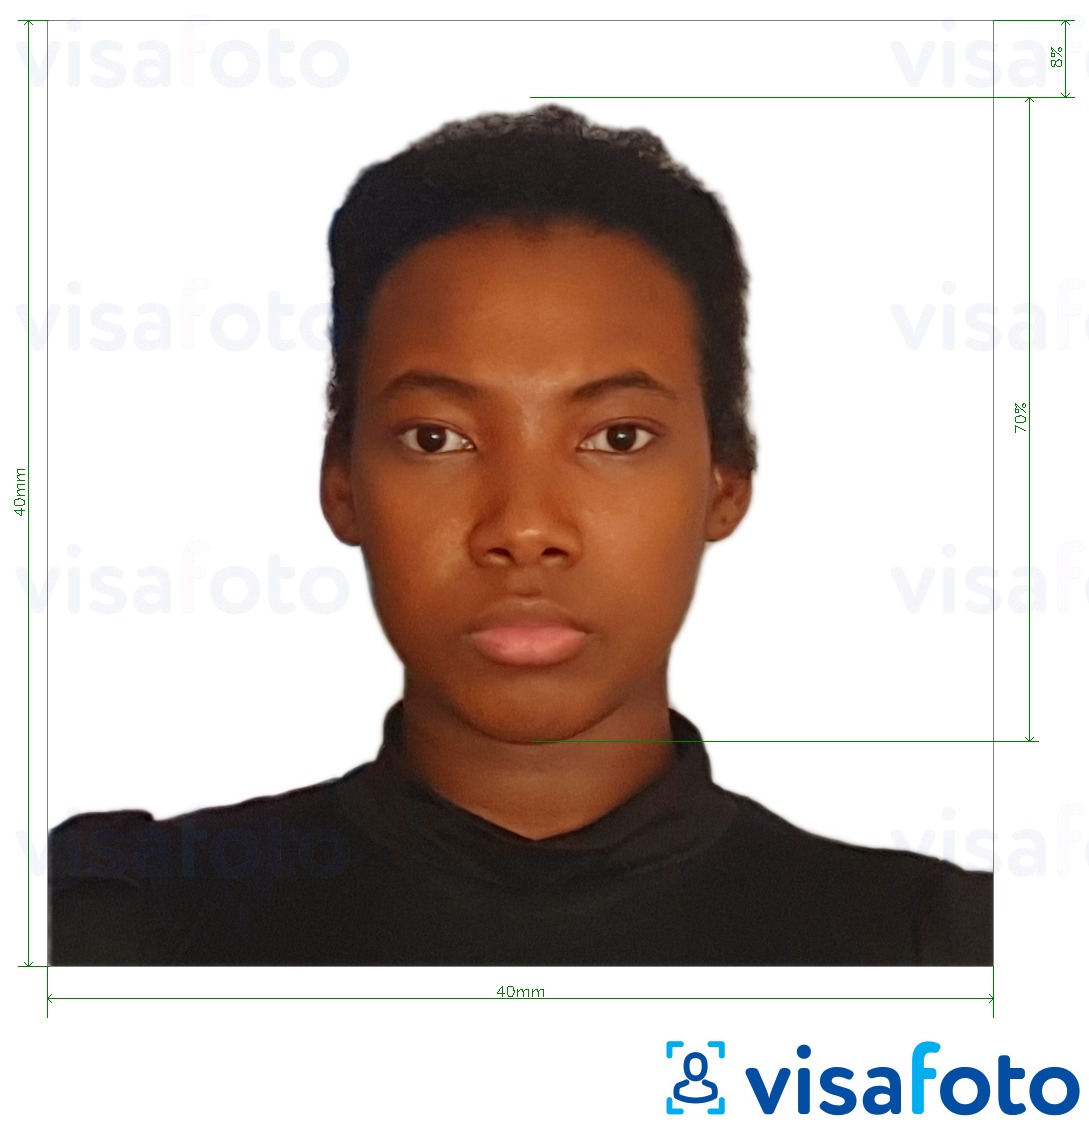 马达加斯加护照40x40毫米 的标准尺寸照片示例